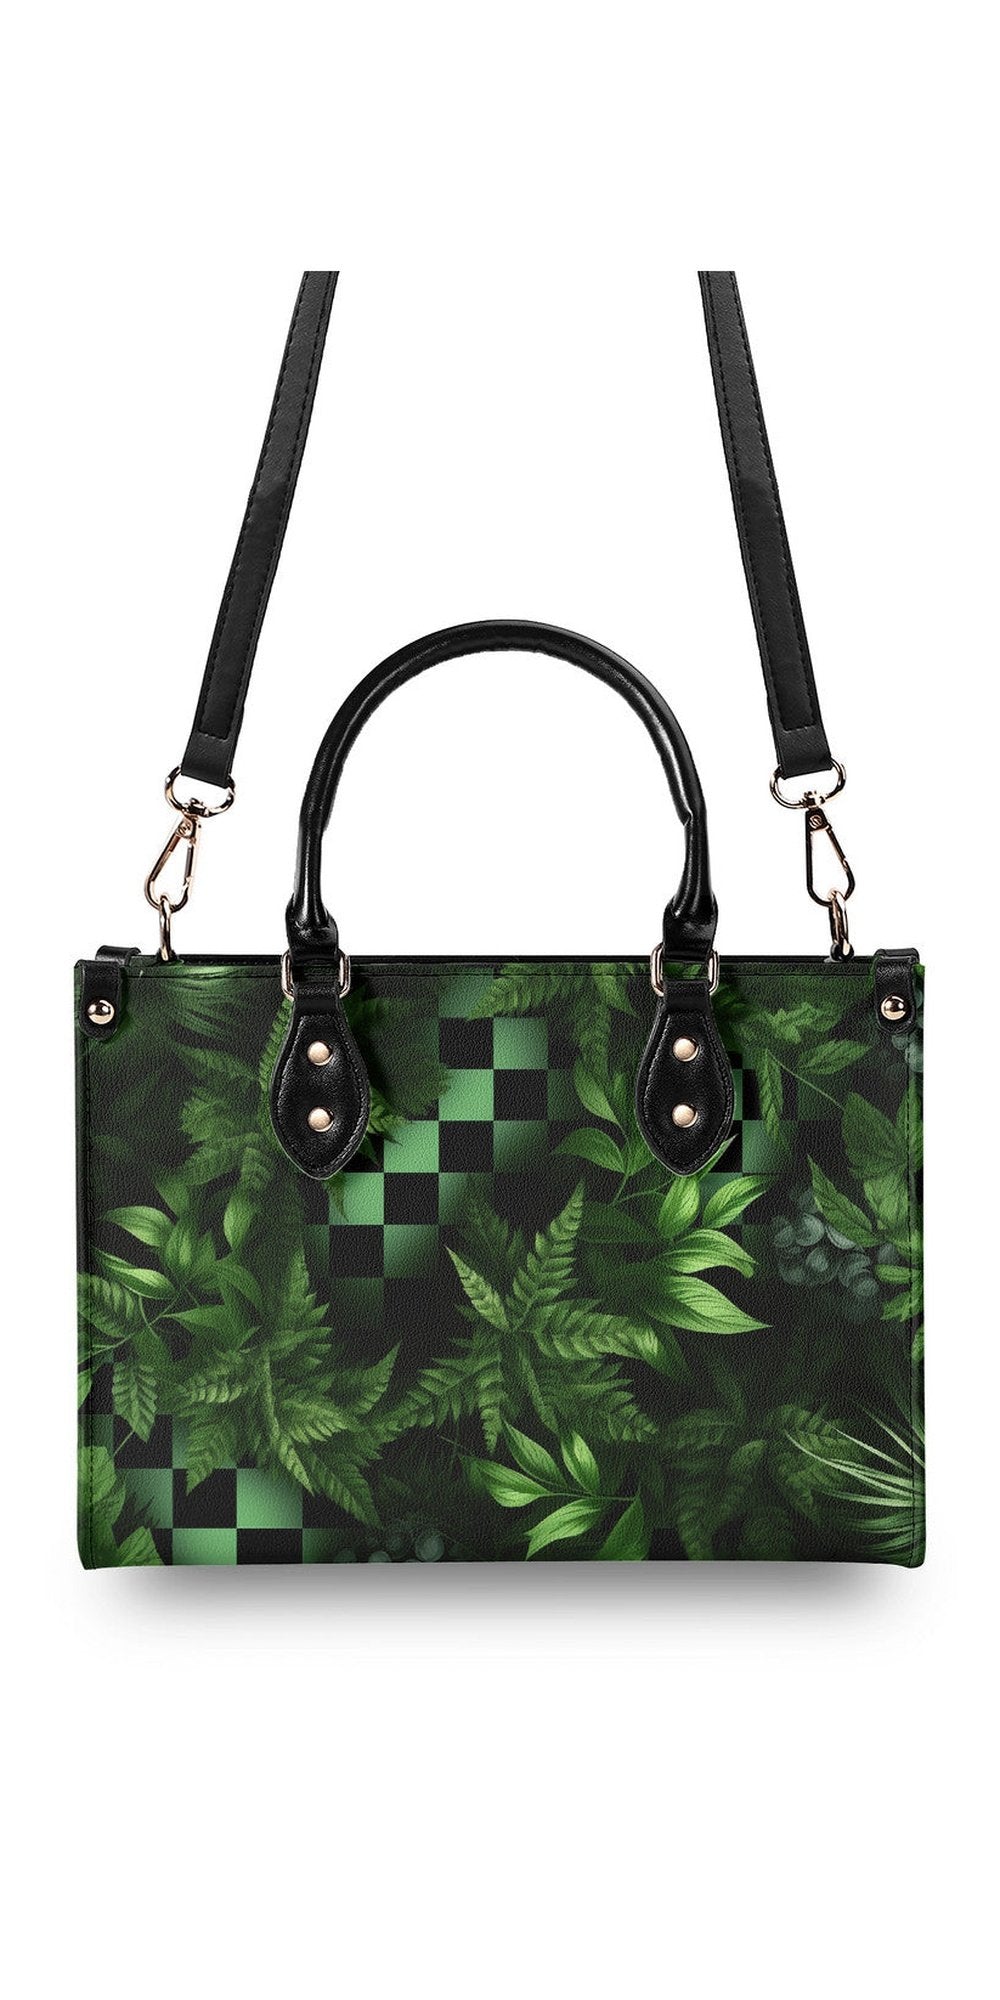 Copy of Multiple Sizes Upgraded Luxury Women PU Leather Handbag